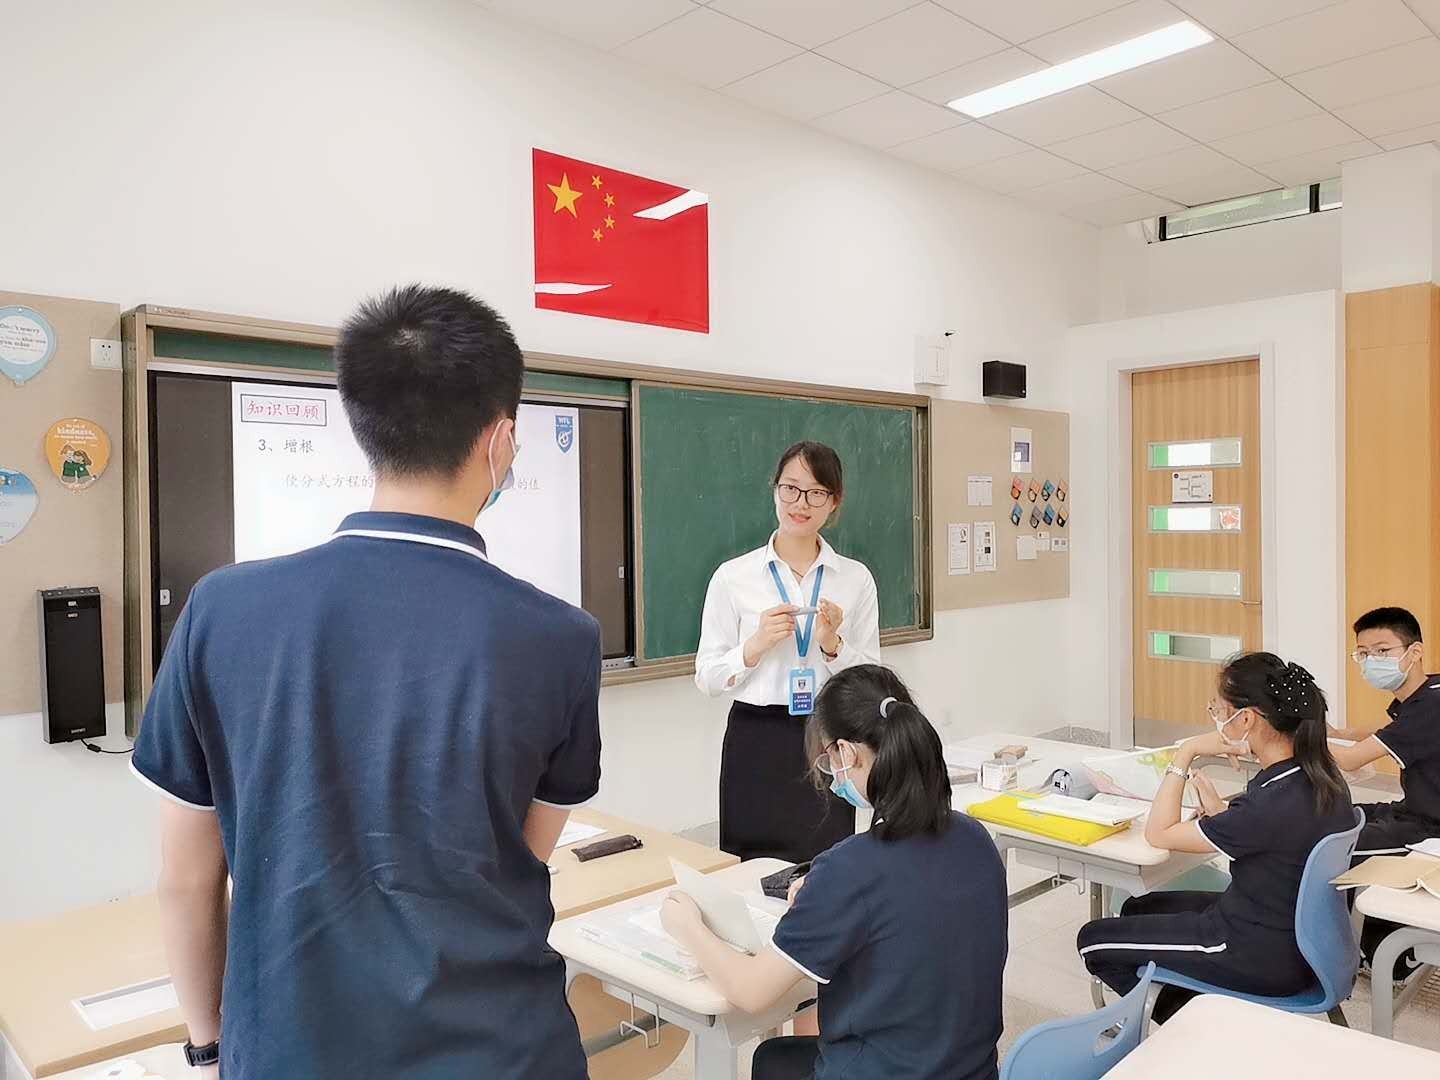 【师者】合肥上海世外老师谈国际化教育 比玩游戏更有趣的是创造游戏